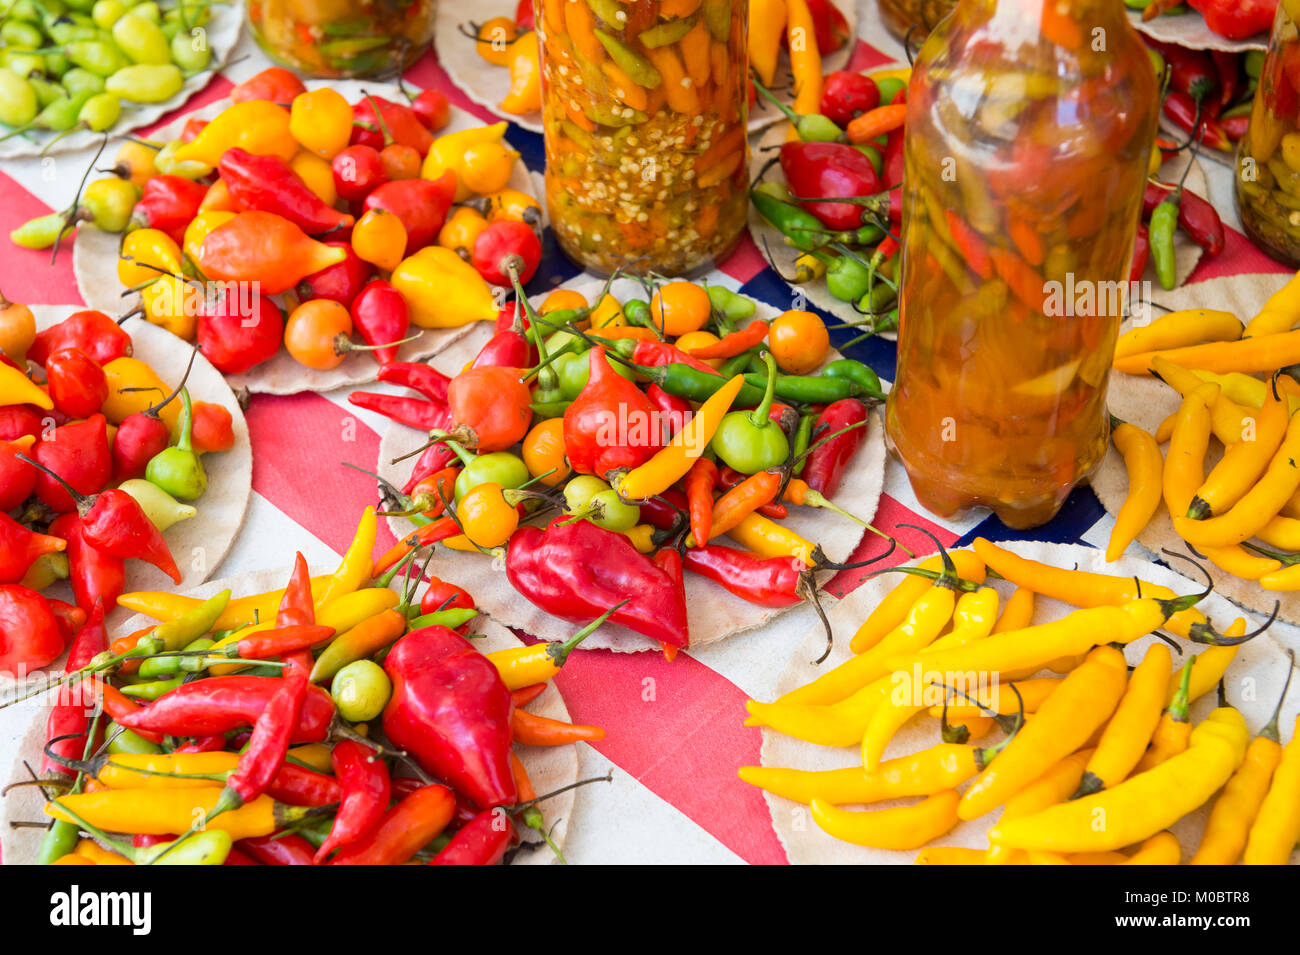 Hell frisch gefärbt und konserviert chili peppers auf Anzeige an der tropischen Bauernmarkt im Stadtteil Ipanema in Rio de Janeiro, Brasilien Stockfoto